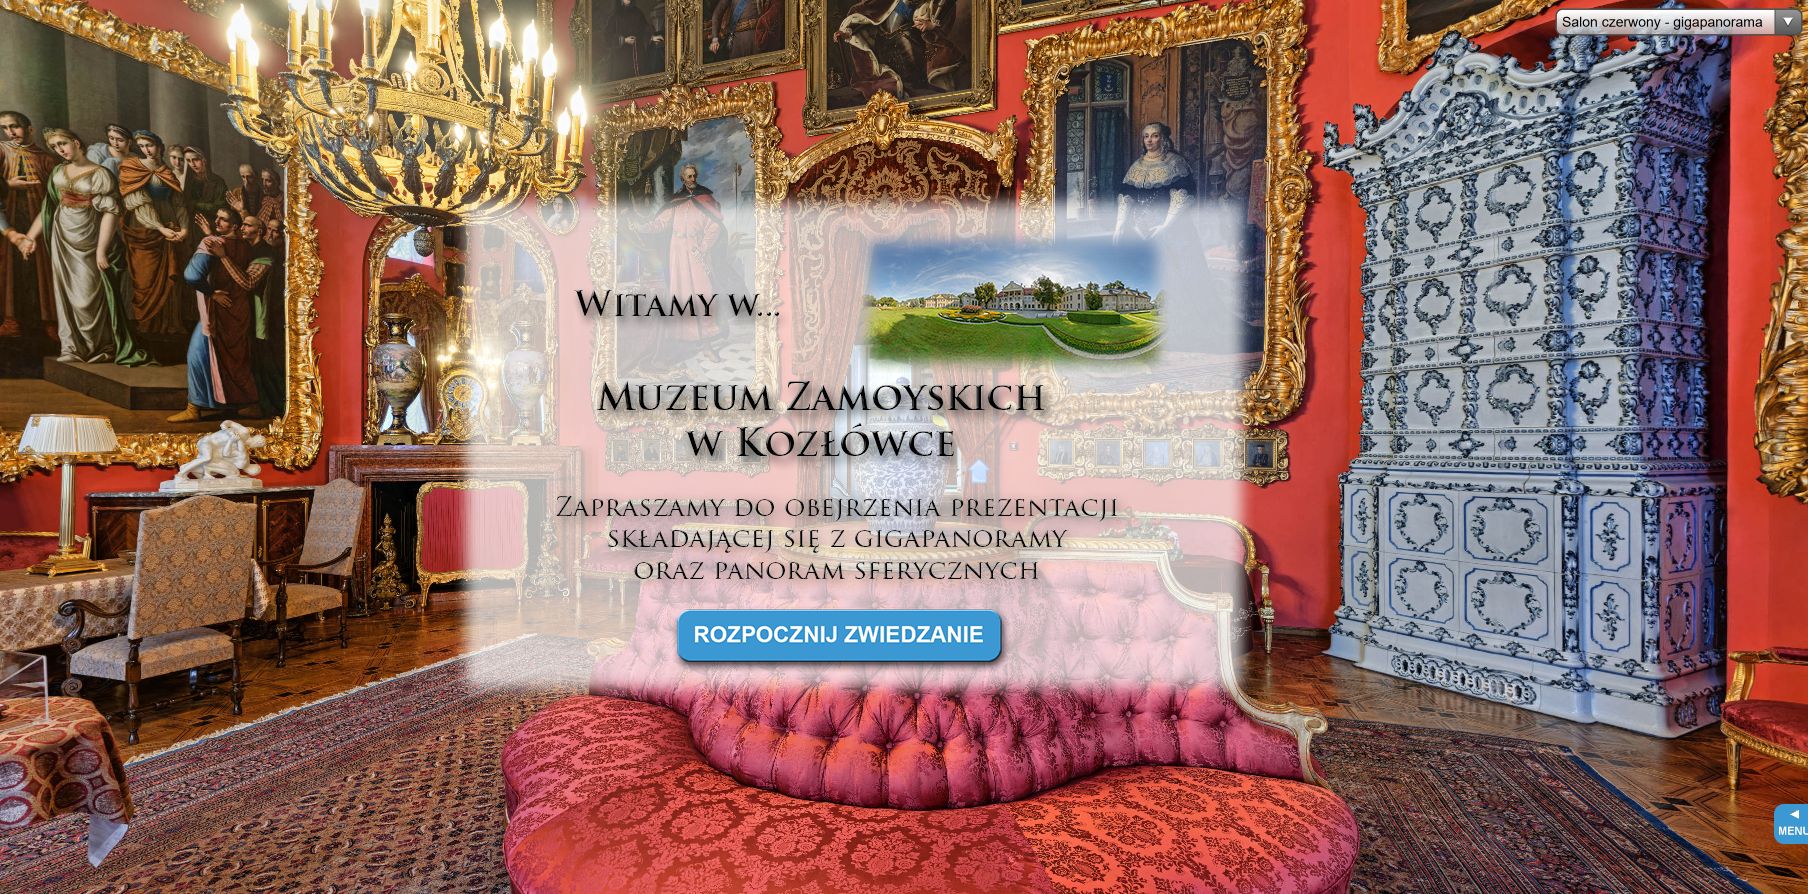 Muzeum w Kozłówce rozpoczęło nowy sezon. Po zimowej przerwie znów można zwiedzać pałac Zamoyskich